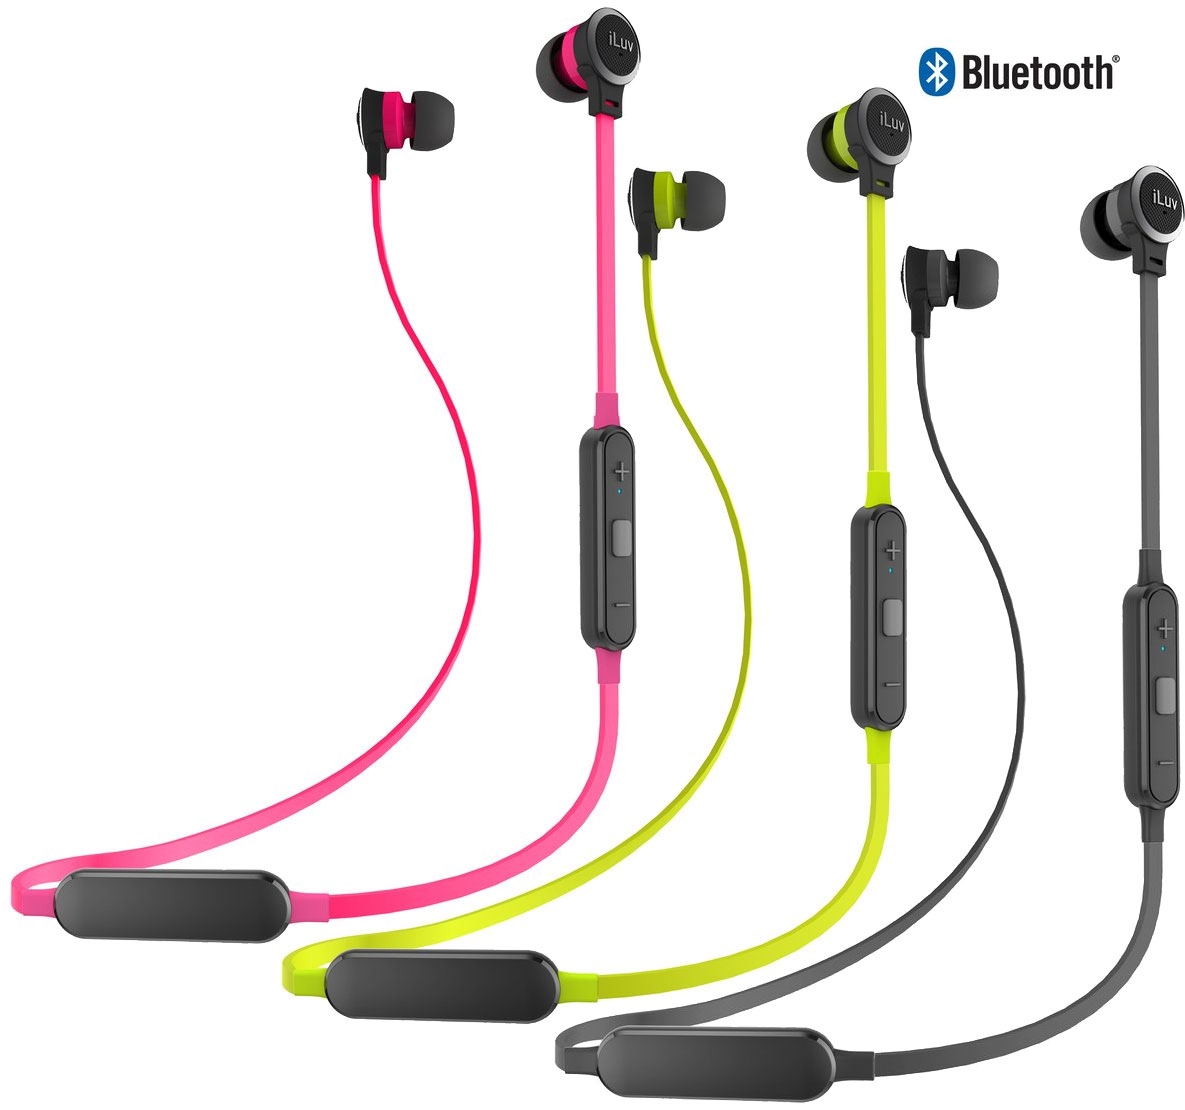 iLuv NEONAIR2 Neon Sound Air 2 Bluetooth In-Ear Earphones